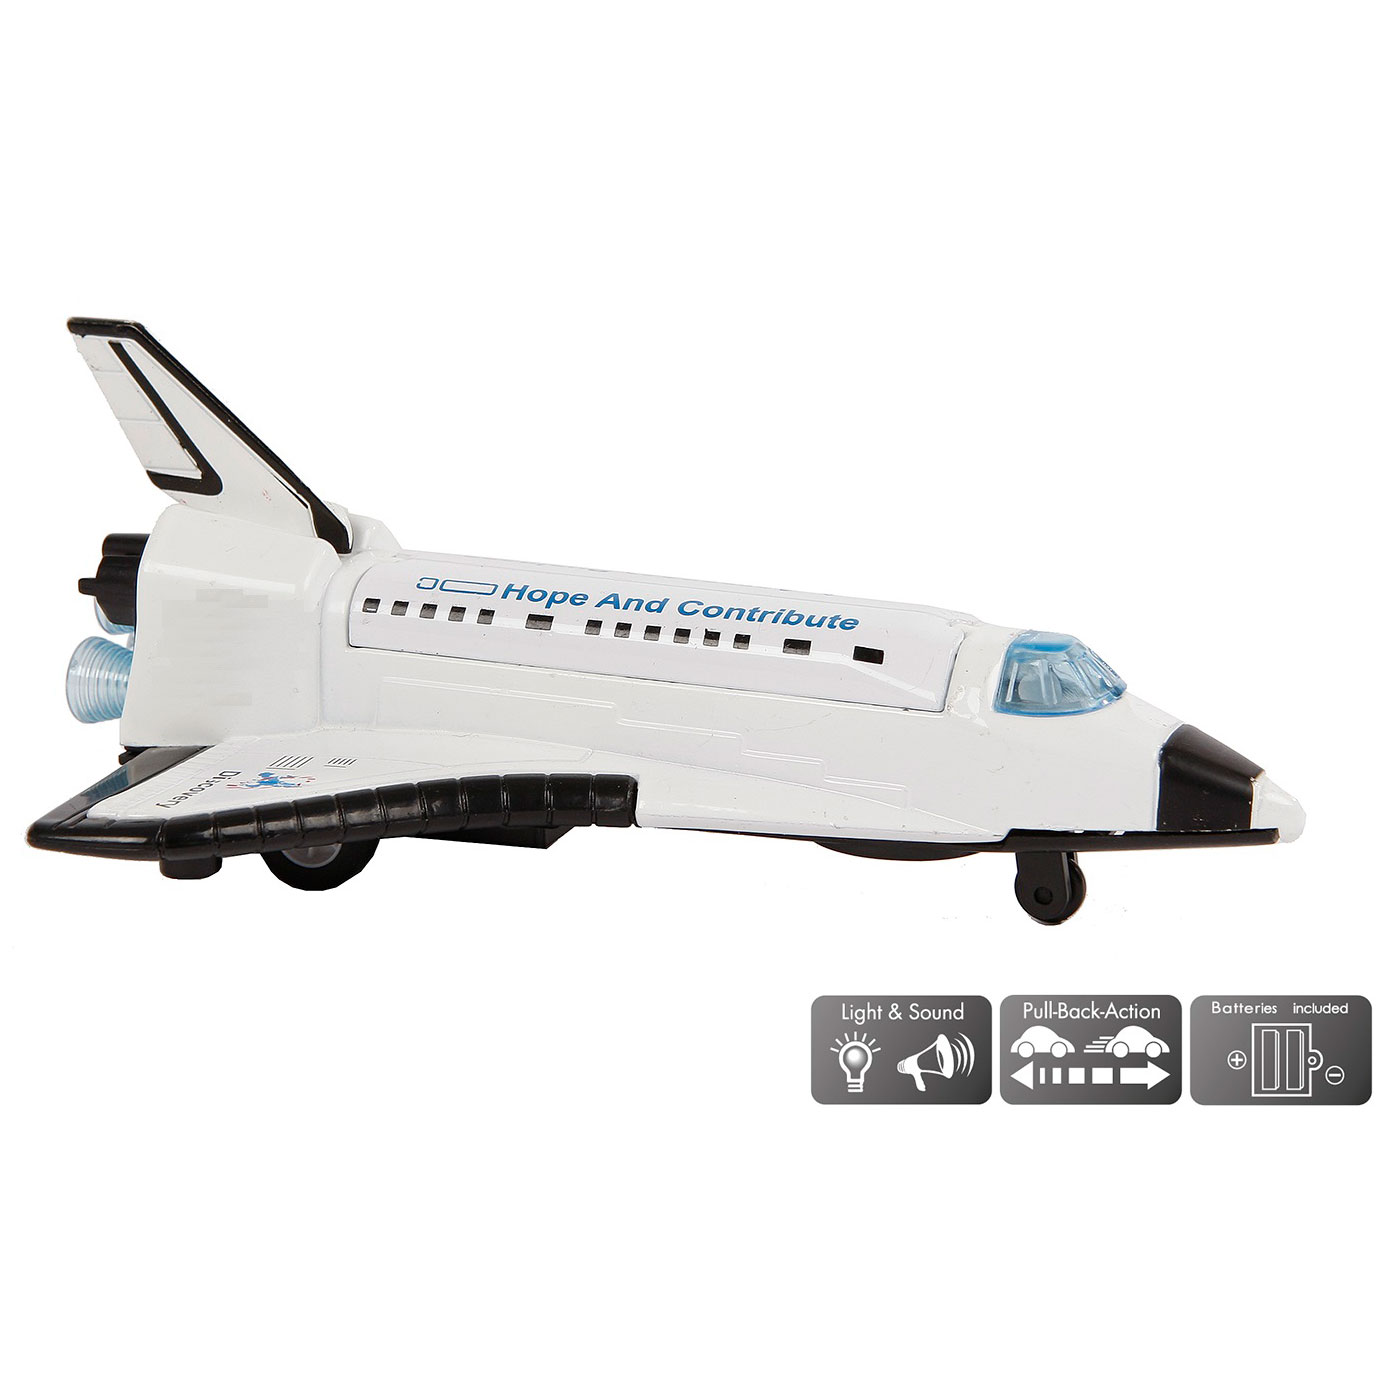 Space Shuttle Die-Cast Pullback met Licht en Geluid